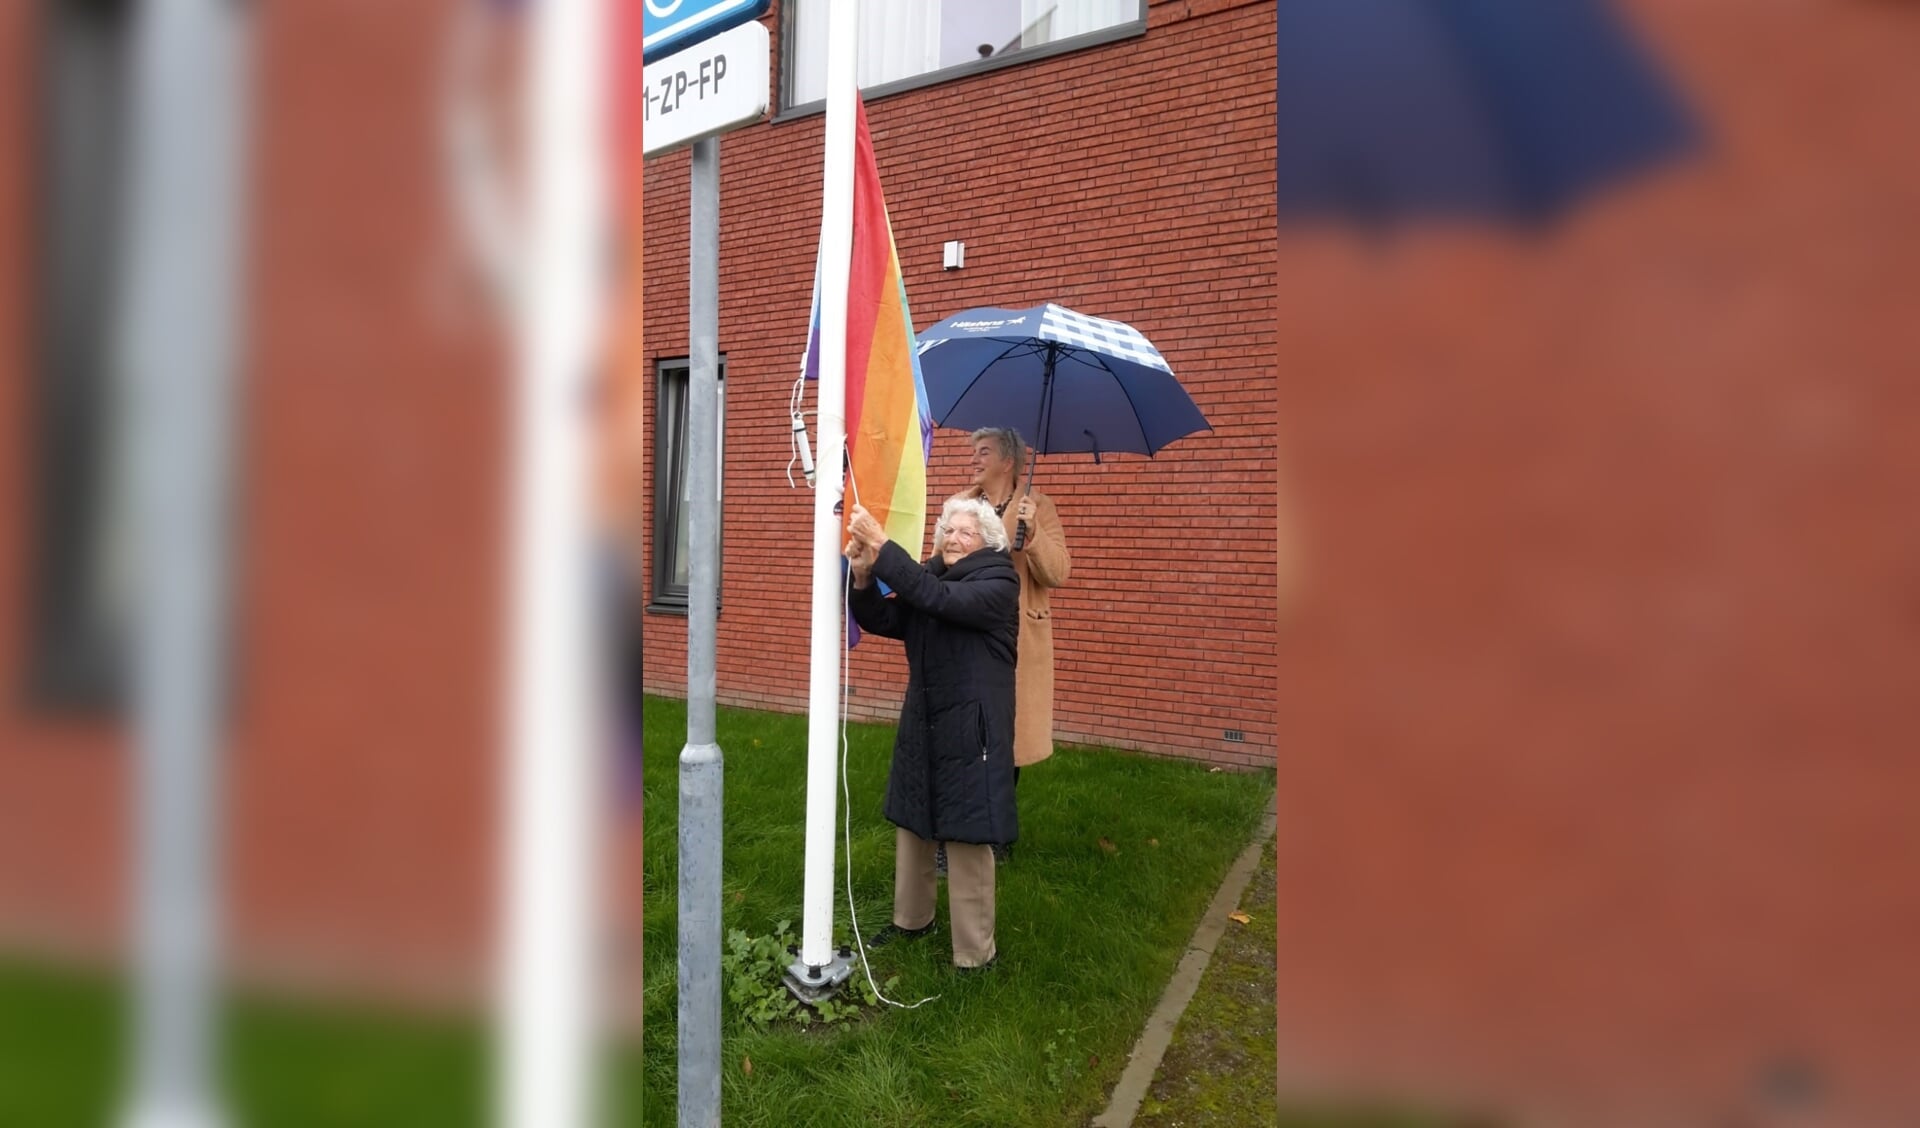 De 101-jarige Beppie van der Werf hijst de regenboogvlag.